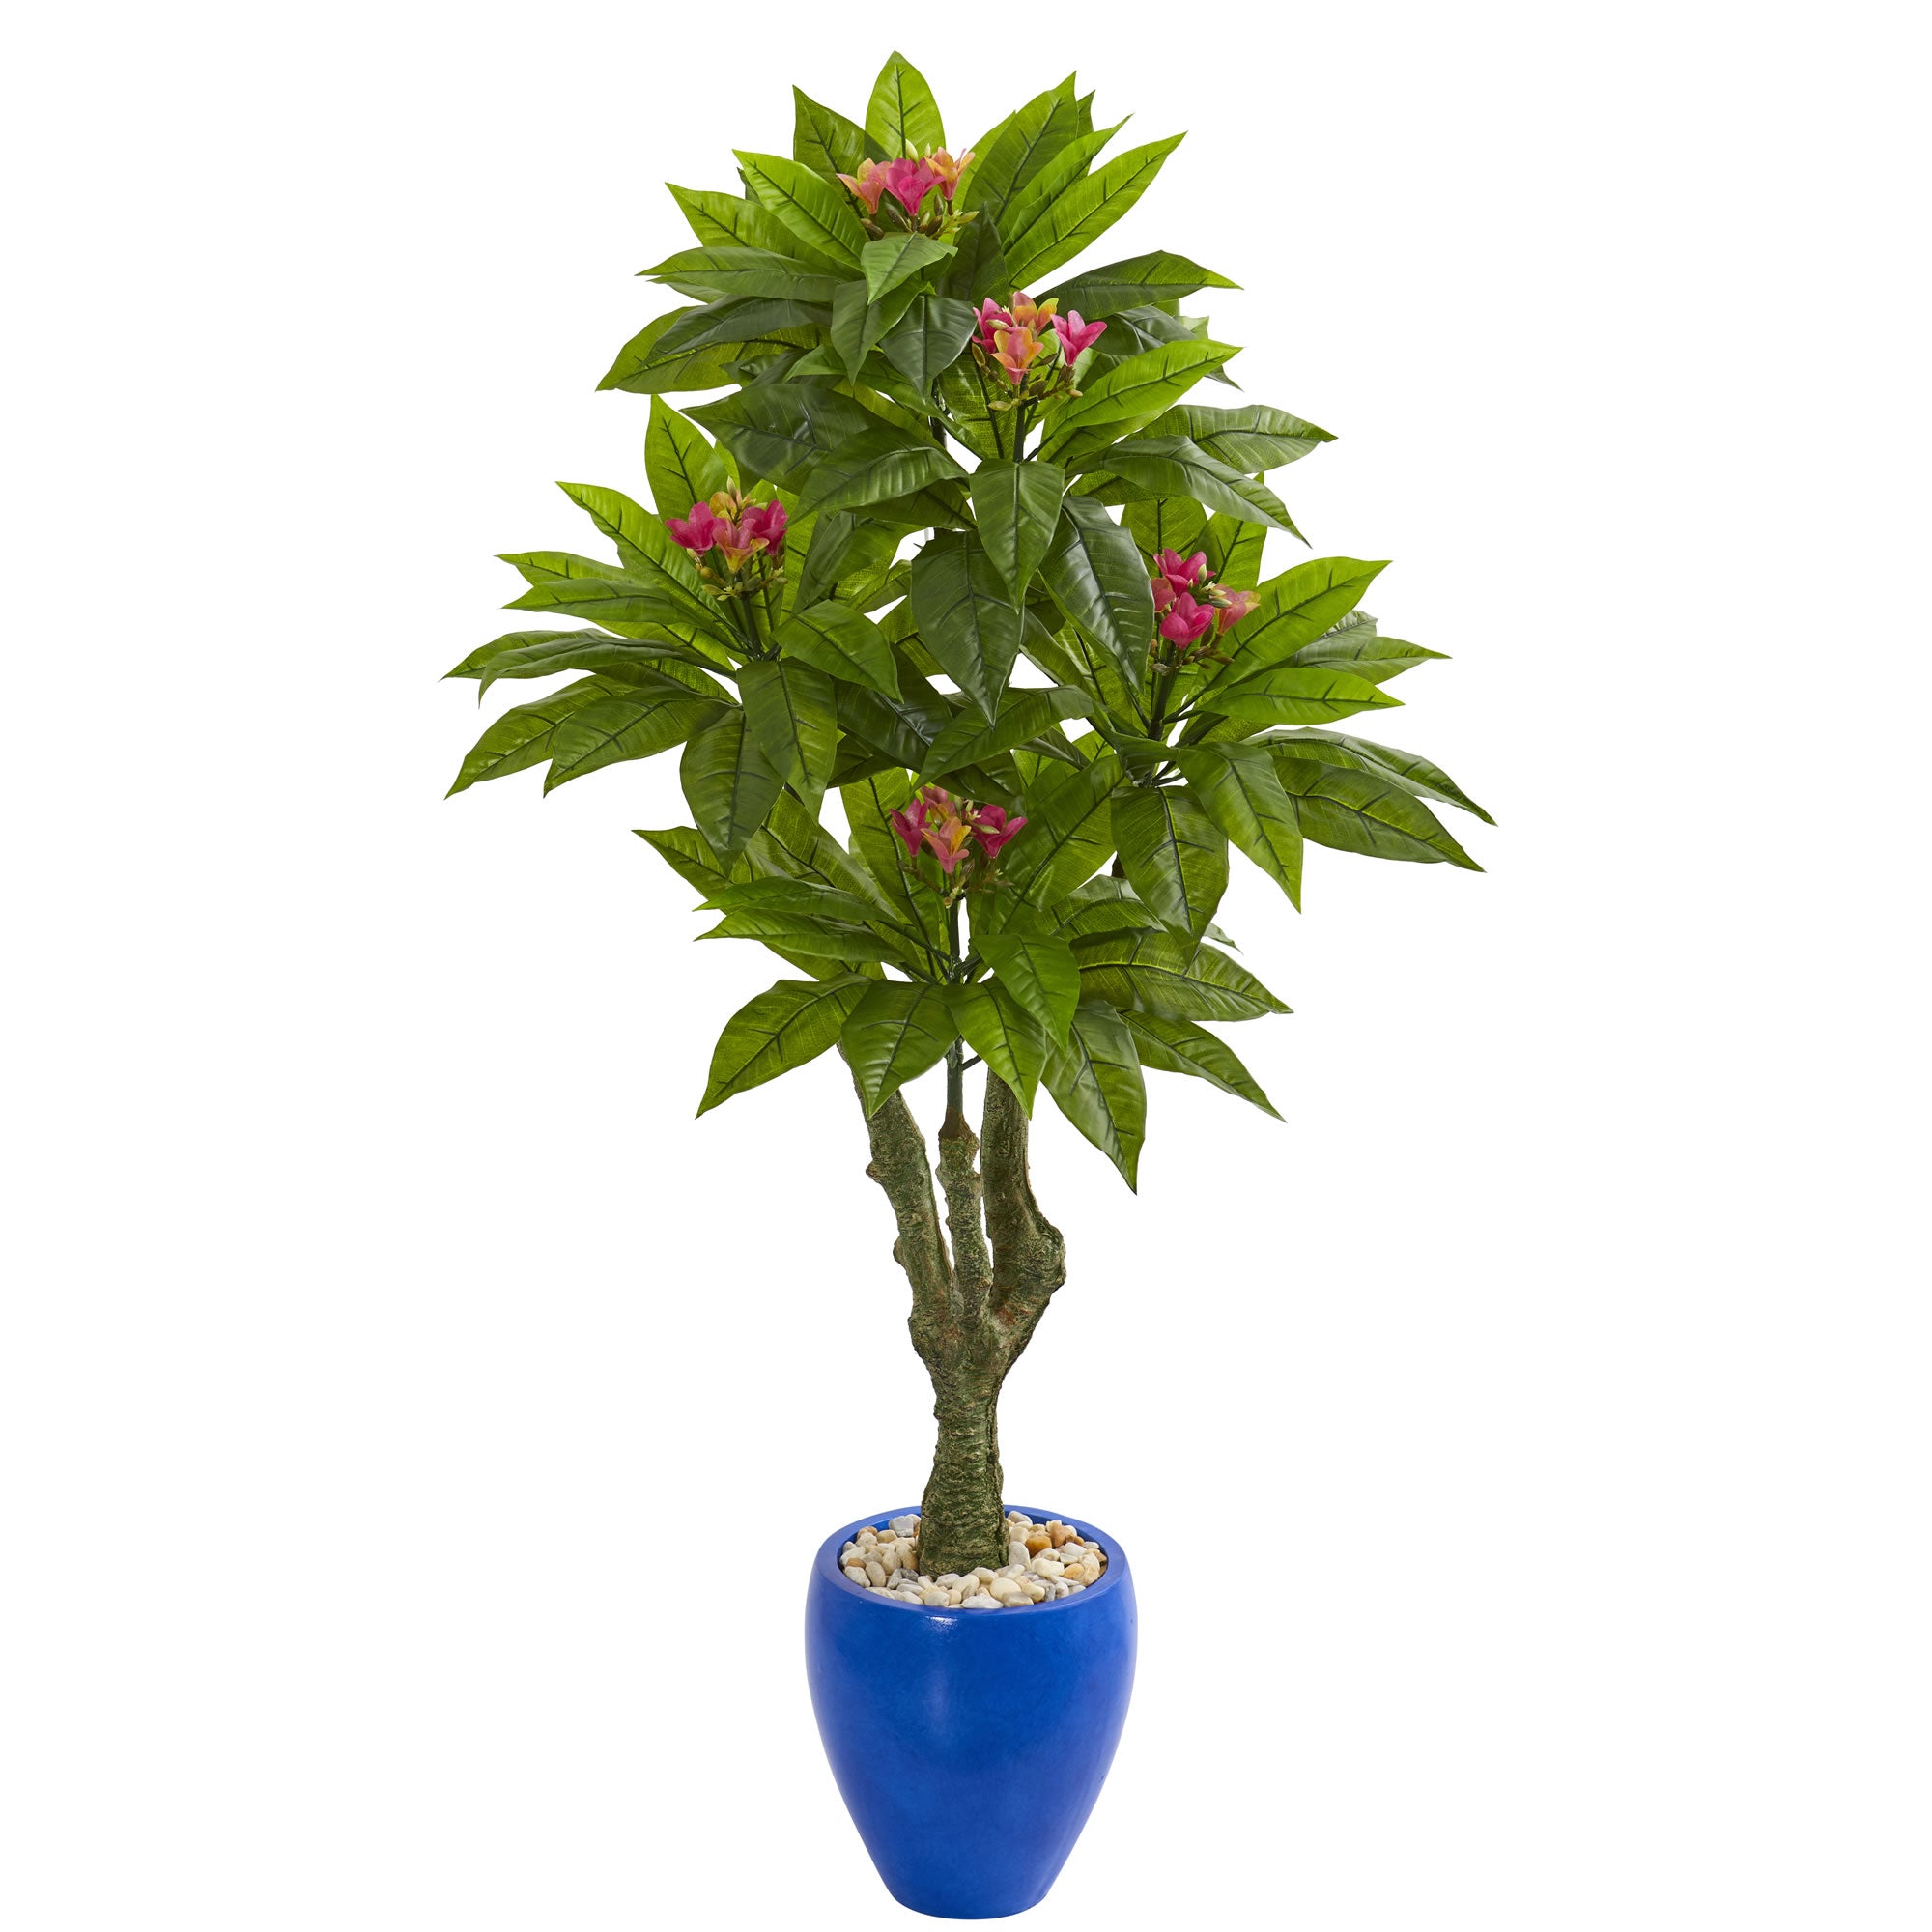 5' Plumeria Artificial Tree in Decorative Blue Planter